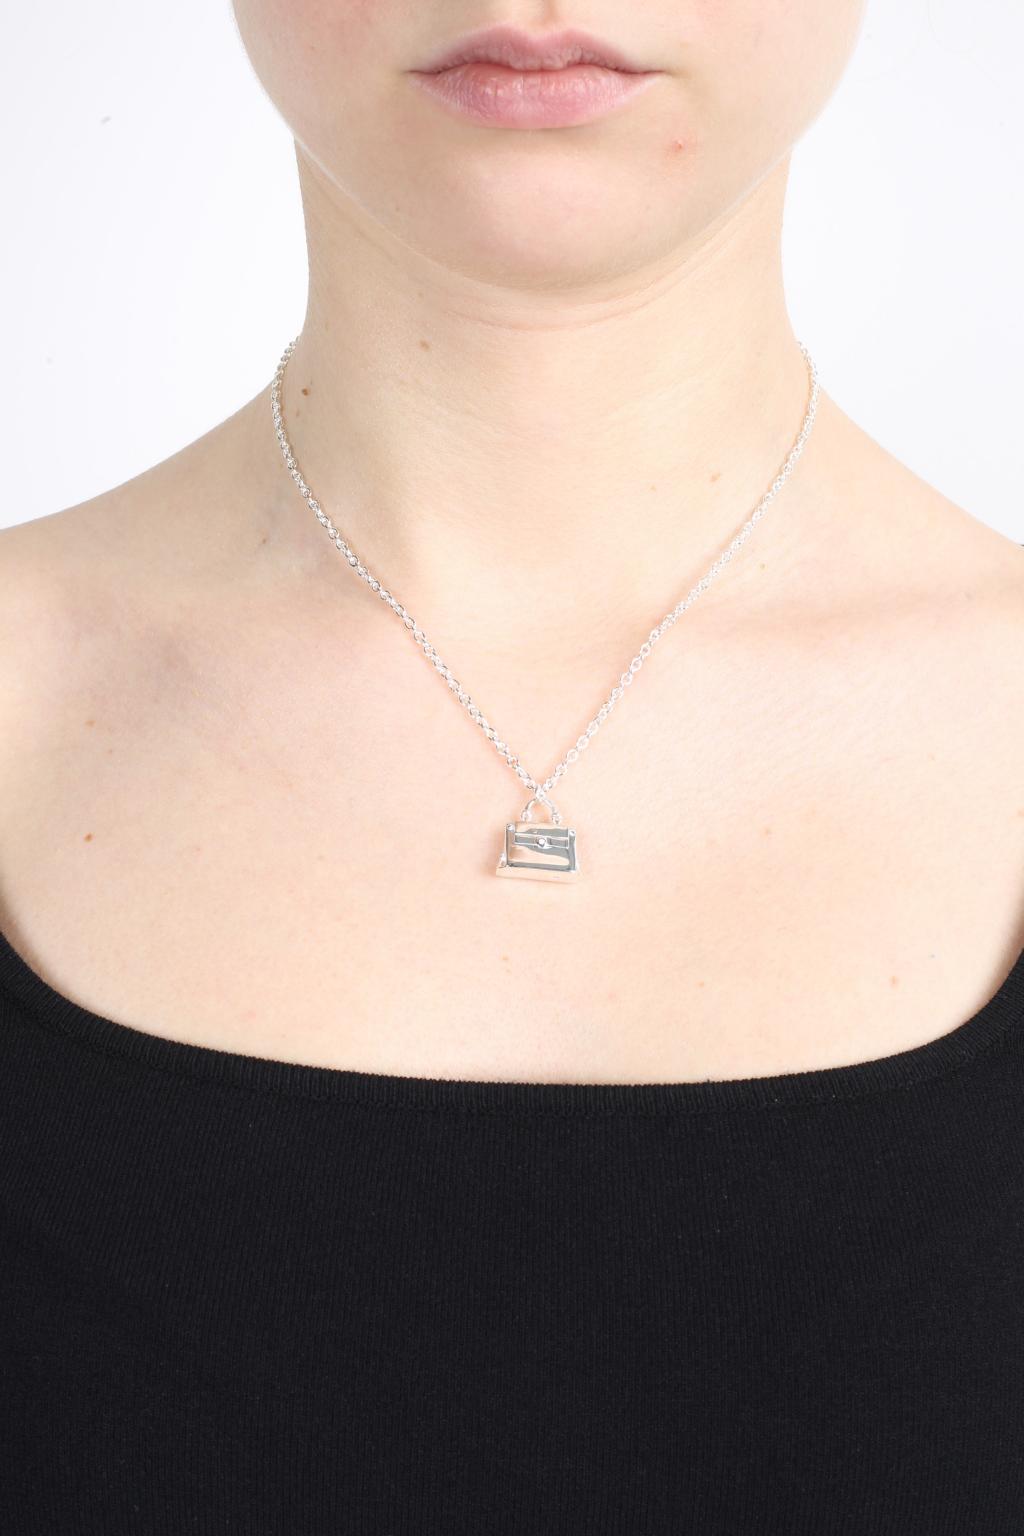 FERRAGAMO Bag Charm Necklace, Women's Jewelery